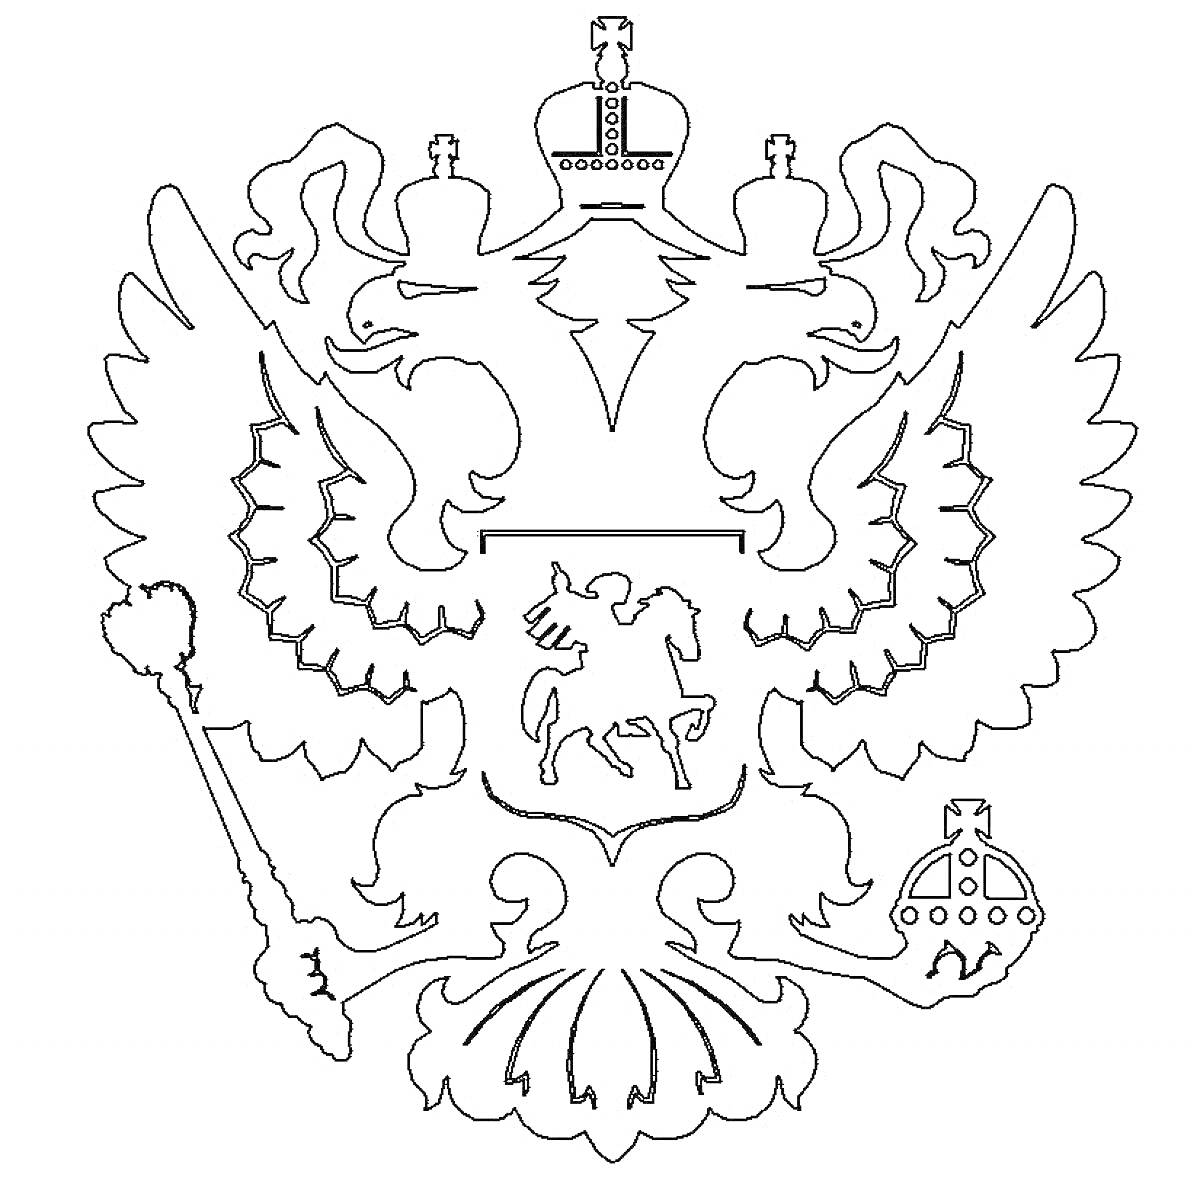 Герб России с двуглавым орлом, царскими коронами, скипетром, державой и всадником на щите